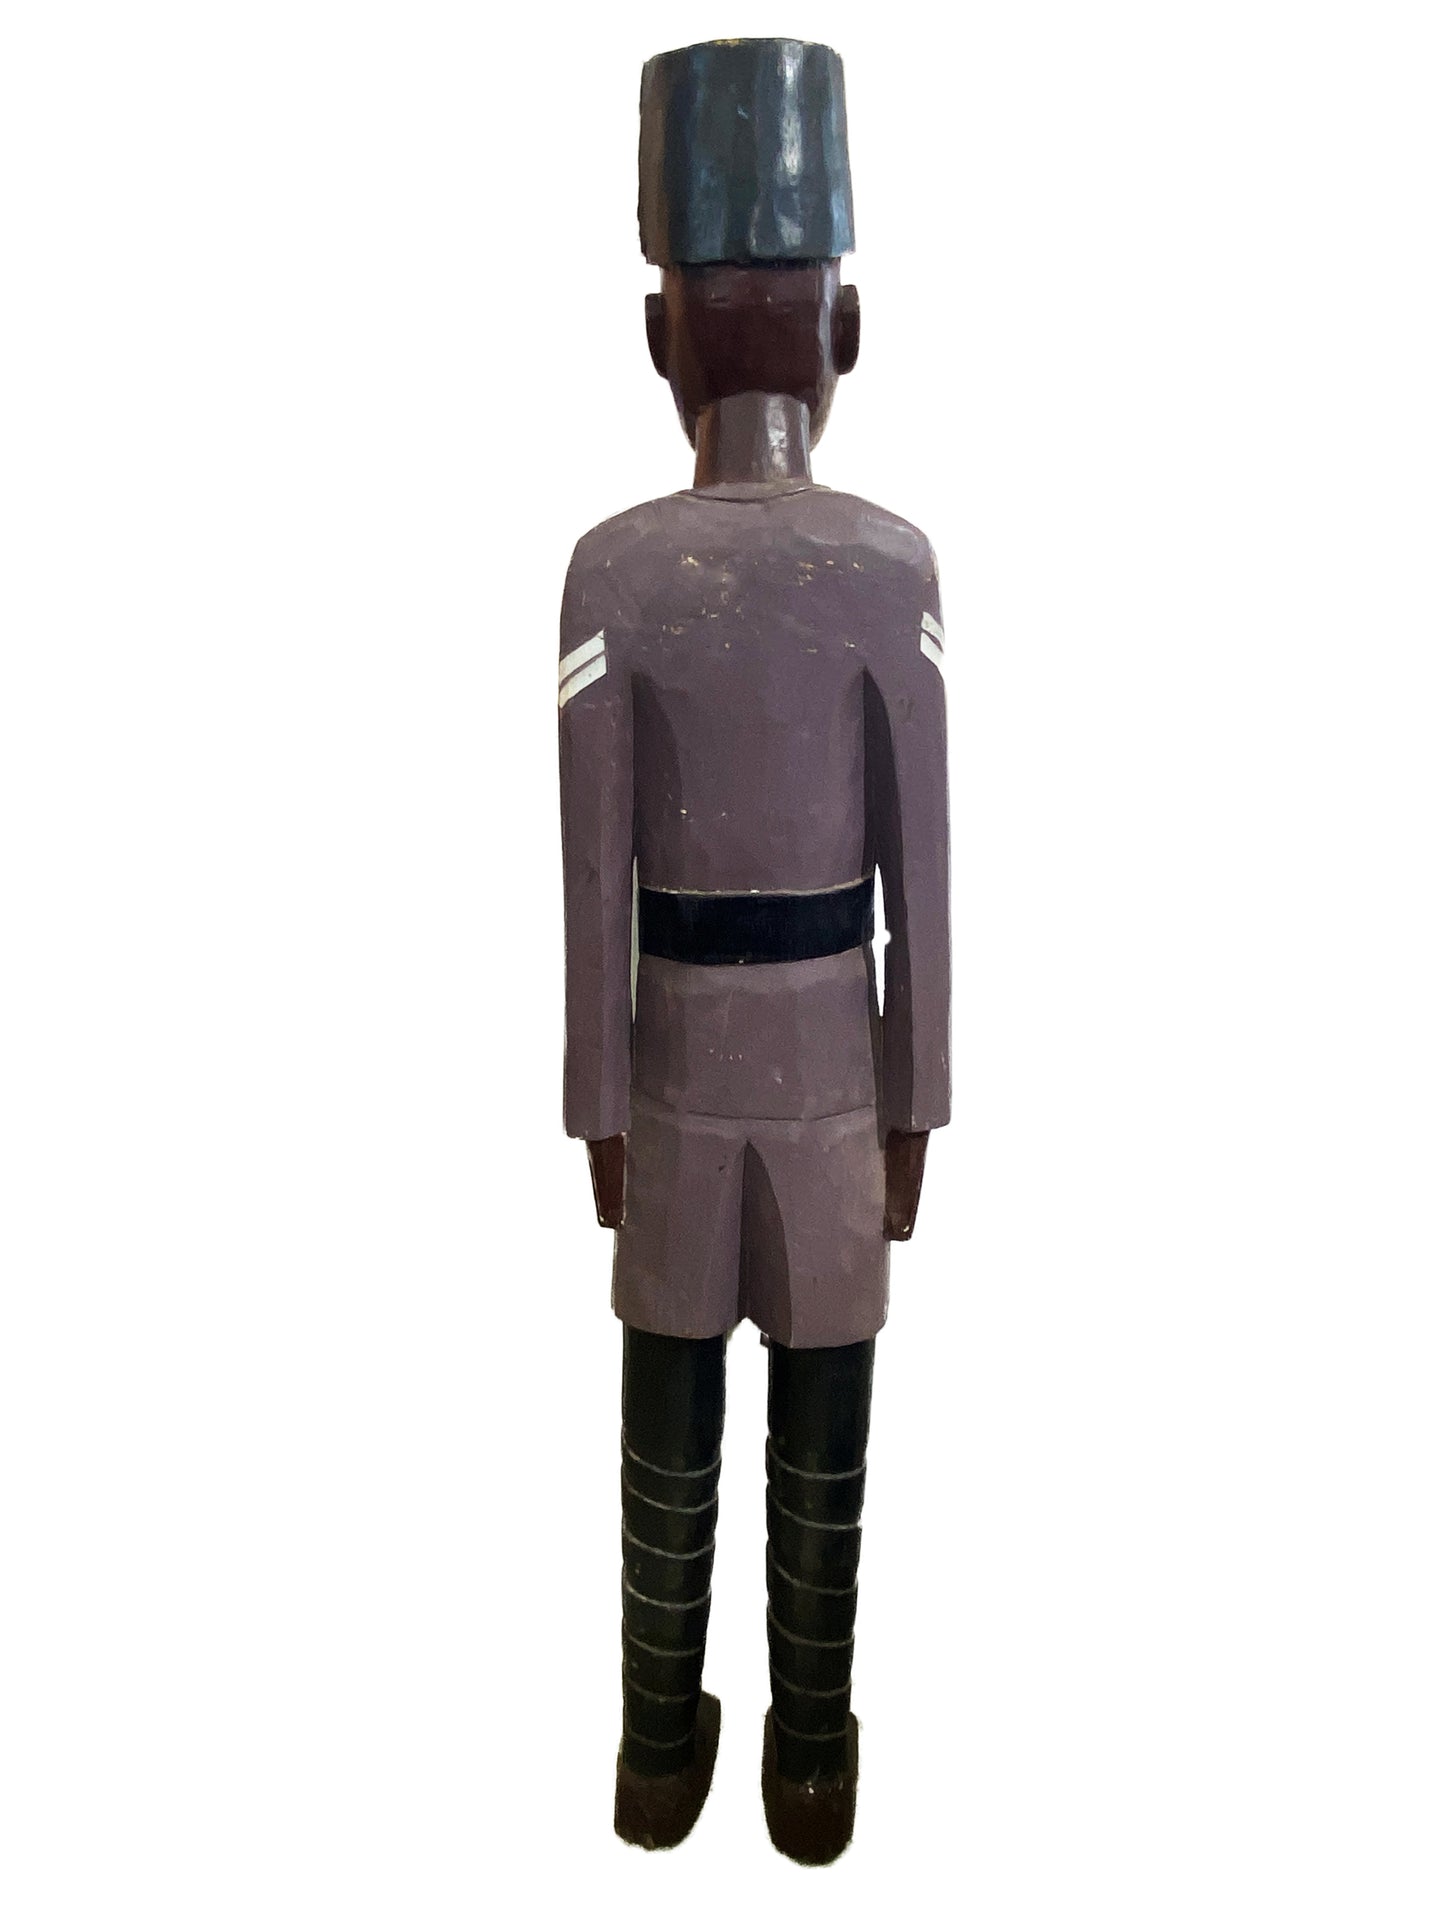 #4398 Large Old Colon Baule Figure With Military Uniform Ivory Coast 52.5" H Description